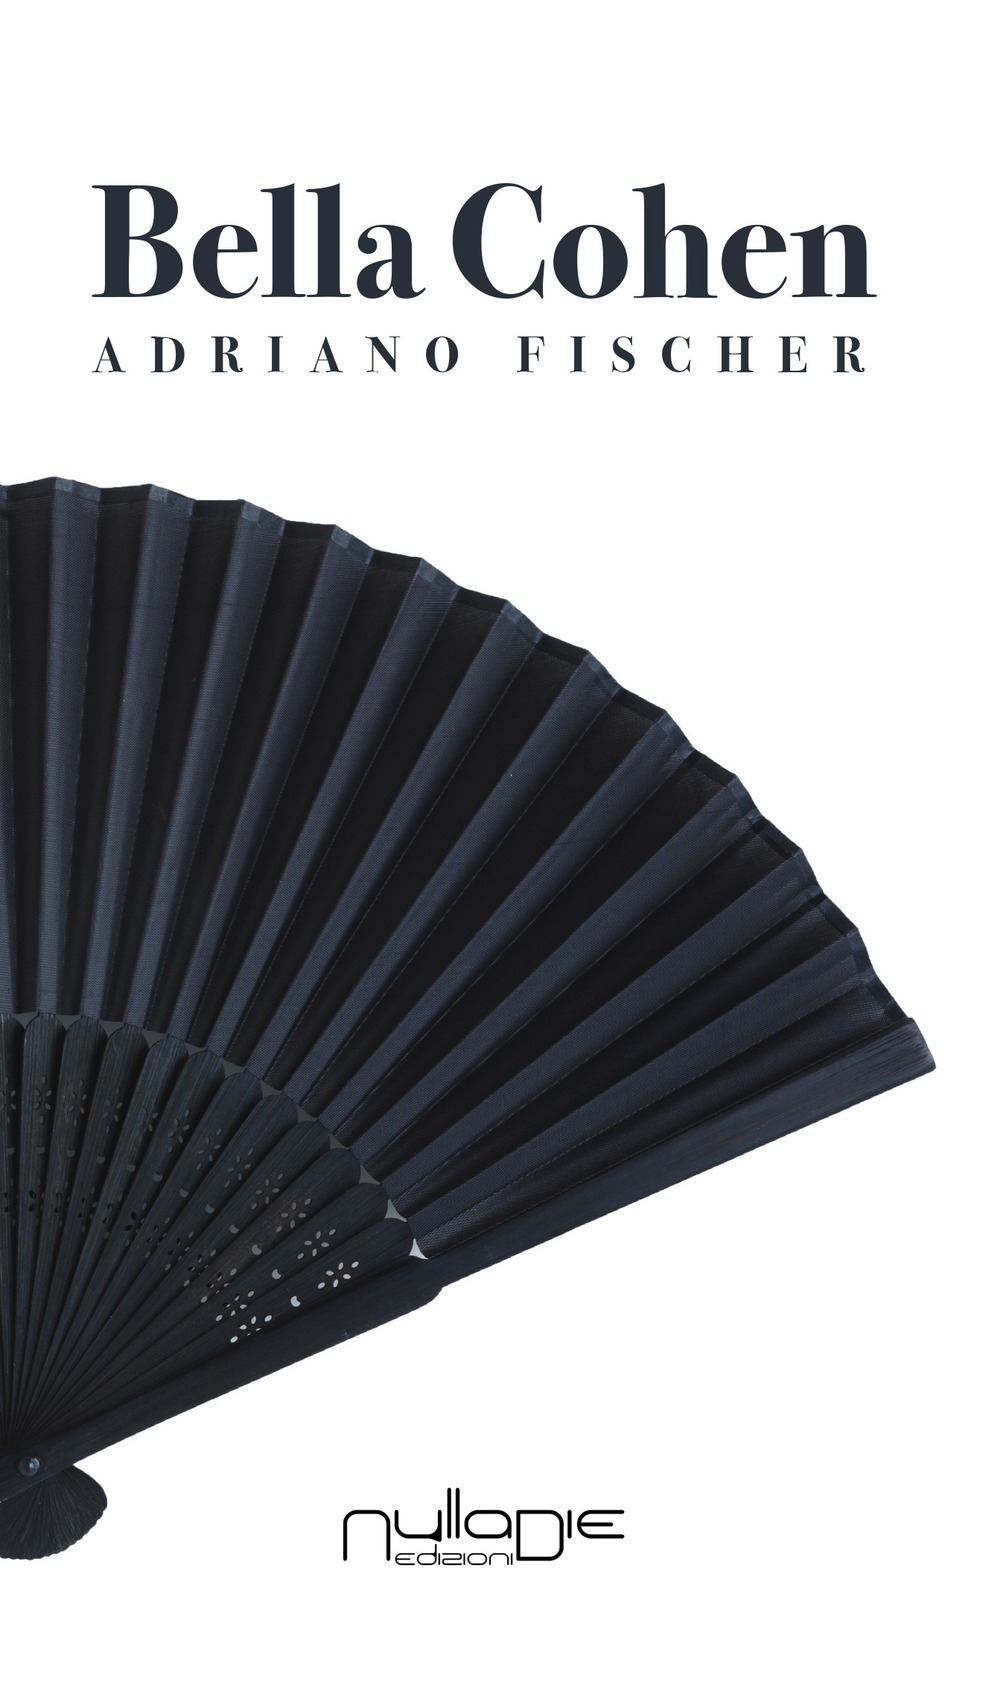 Libri Adriano Fischer - Bella Cohen NUOVO SIGILLATO, EDIZIONE DEL 15/01/2018 SUBITO DISPONIBILE